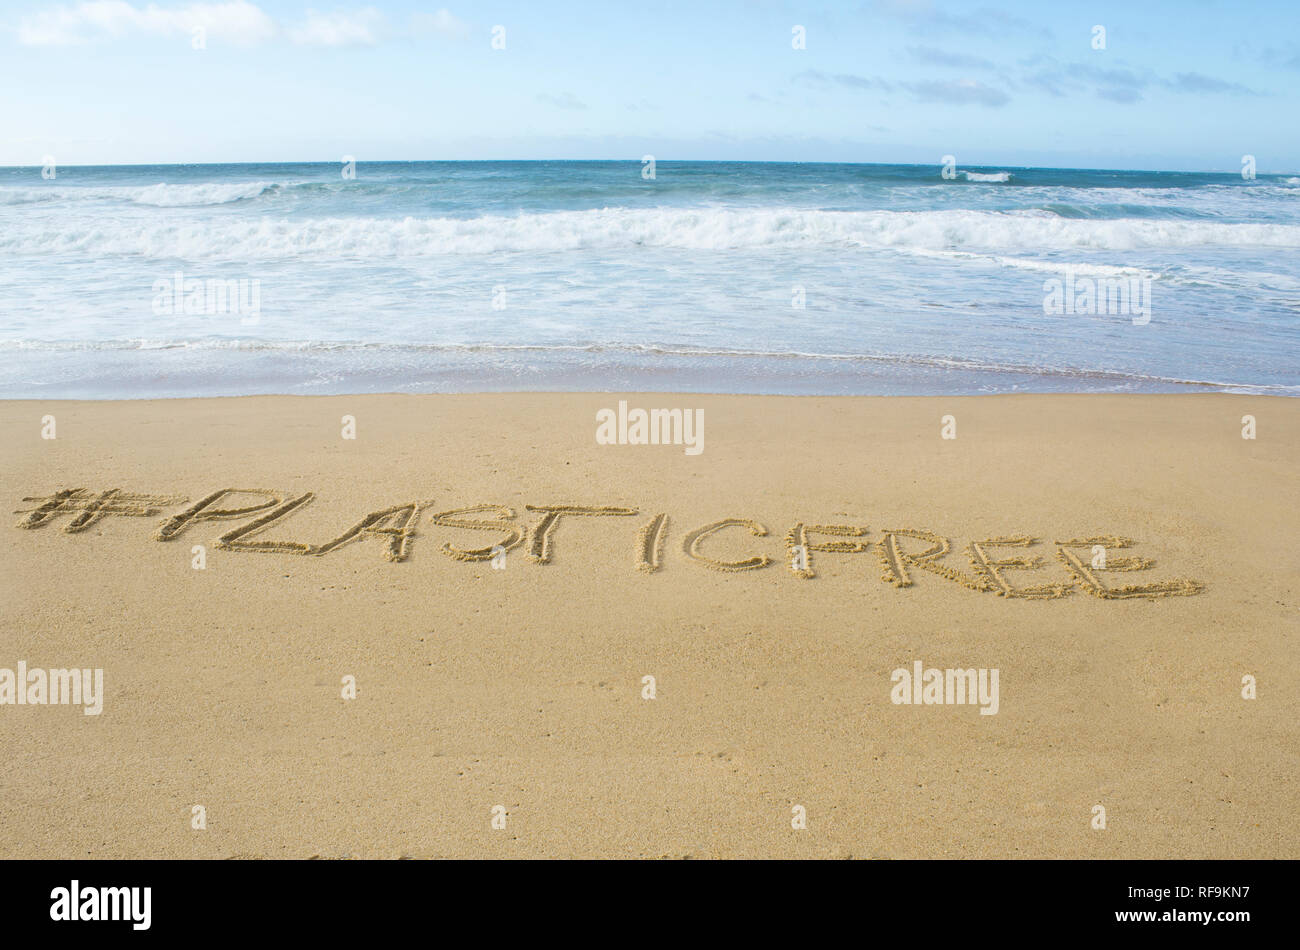 # Inscription plasticfree écrit sur le sable, sur les rives de l'océan Atlantique Banque D'Images